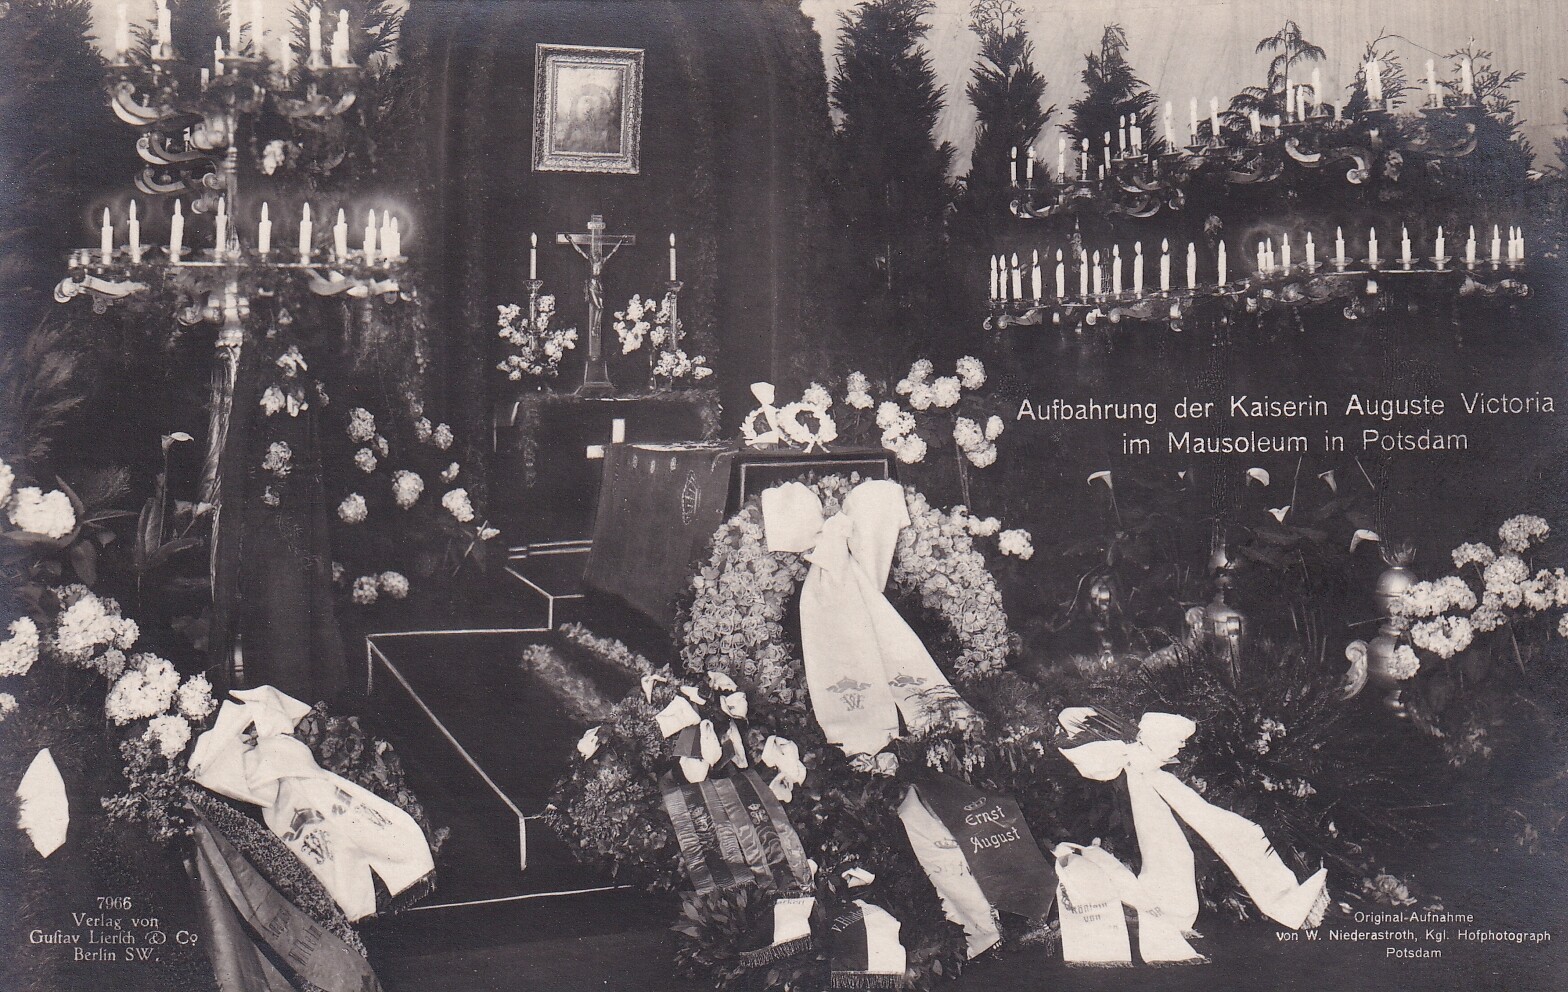 Bildpostkarte mit Foto des aufgebahrten Sargs der ehemaligen Kaiserin Auguste Viktoria (1858-1921) im Mausoleum in Potsdam, 19. April 1921 (Schloß Wernigerode GmbH RR-F)